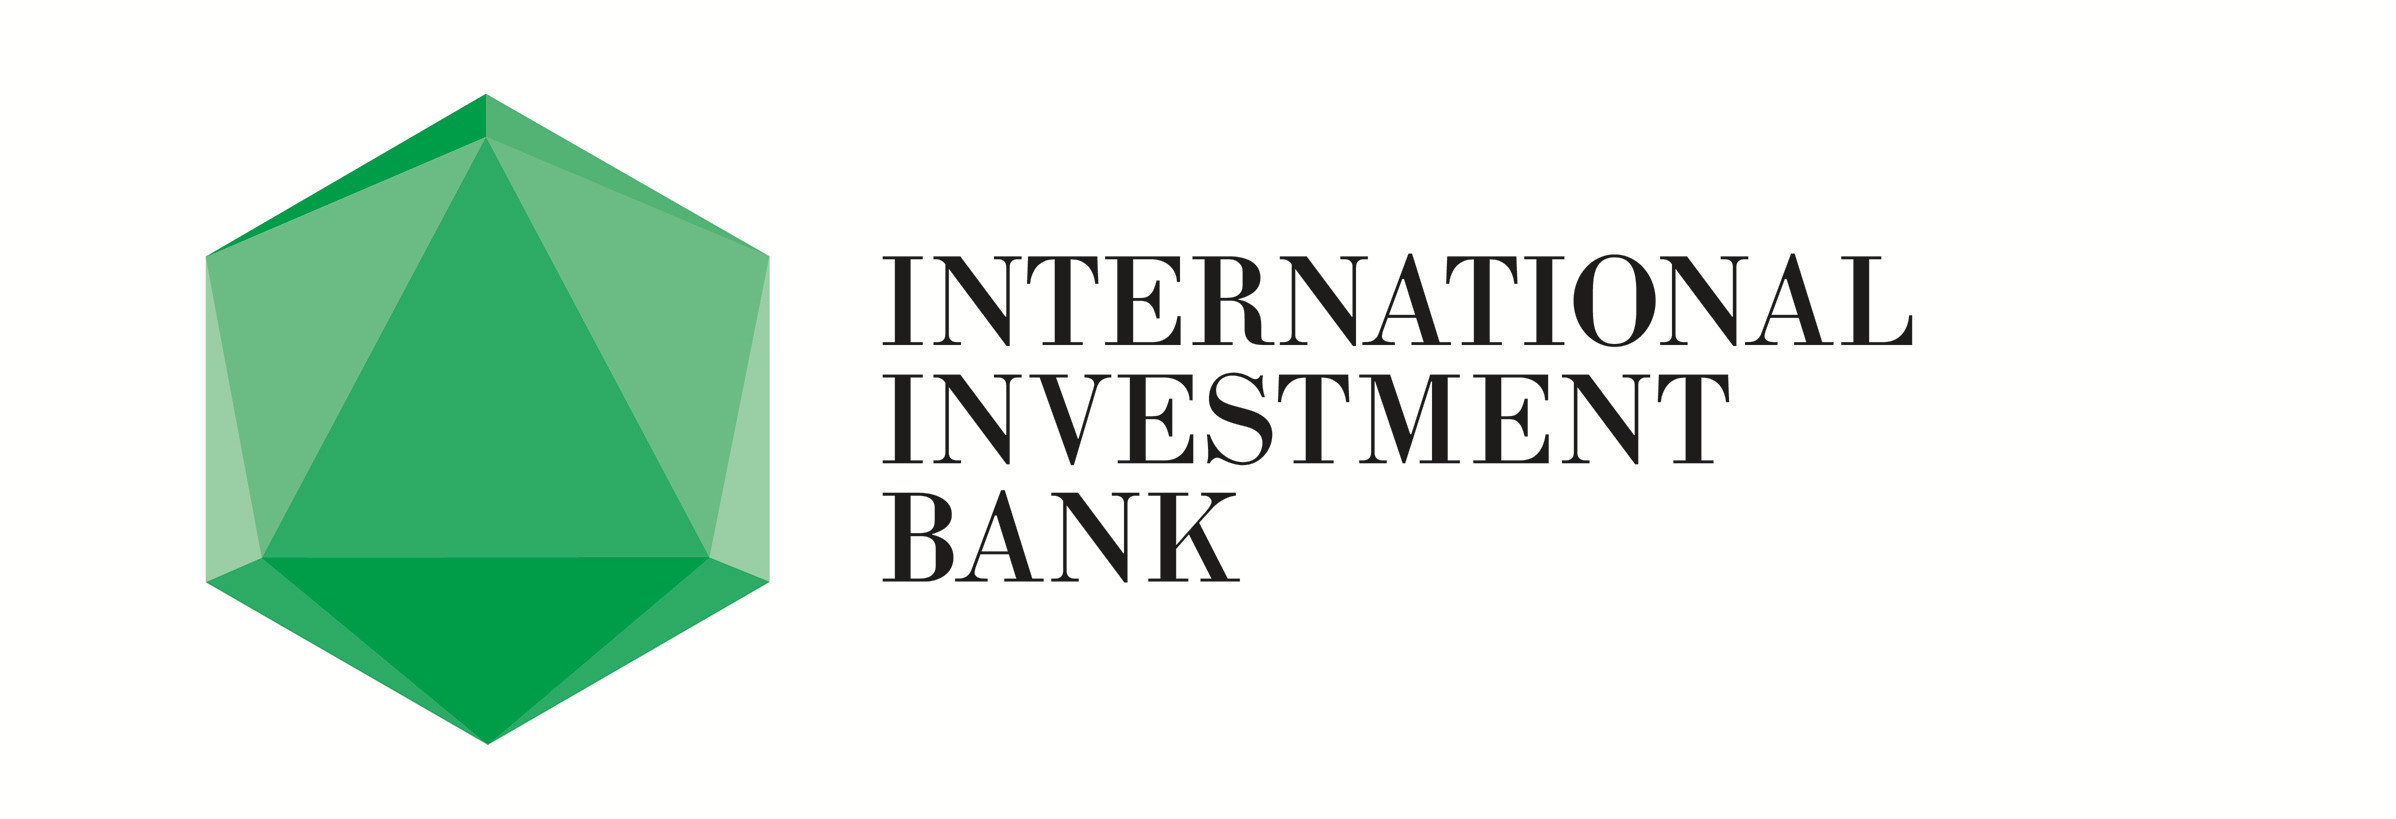 Сайт первого инвестиционного банка. Международный инвестиционный банк. Международный инвестиционный банк МИБ. Международный инвестиционный банк logo. Международный банк эмблема.